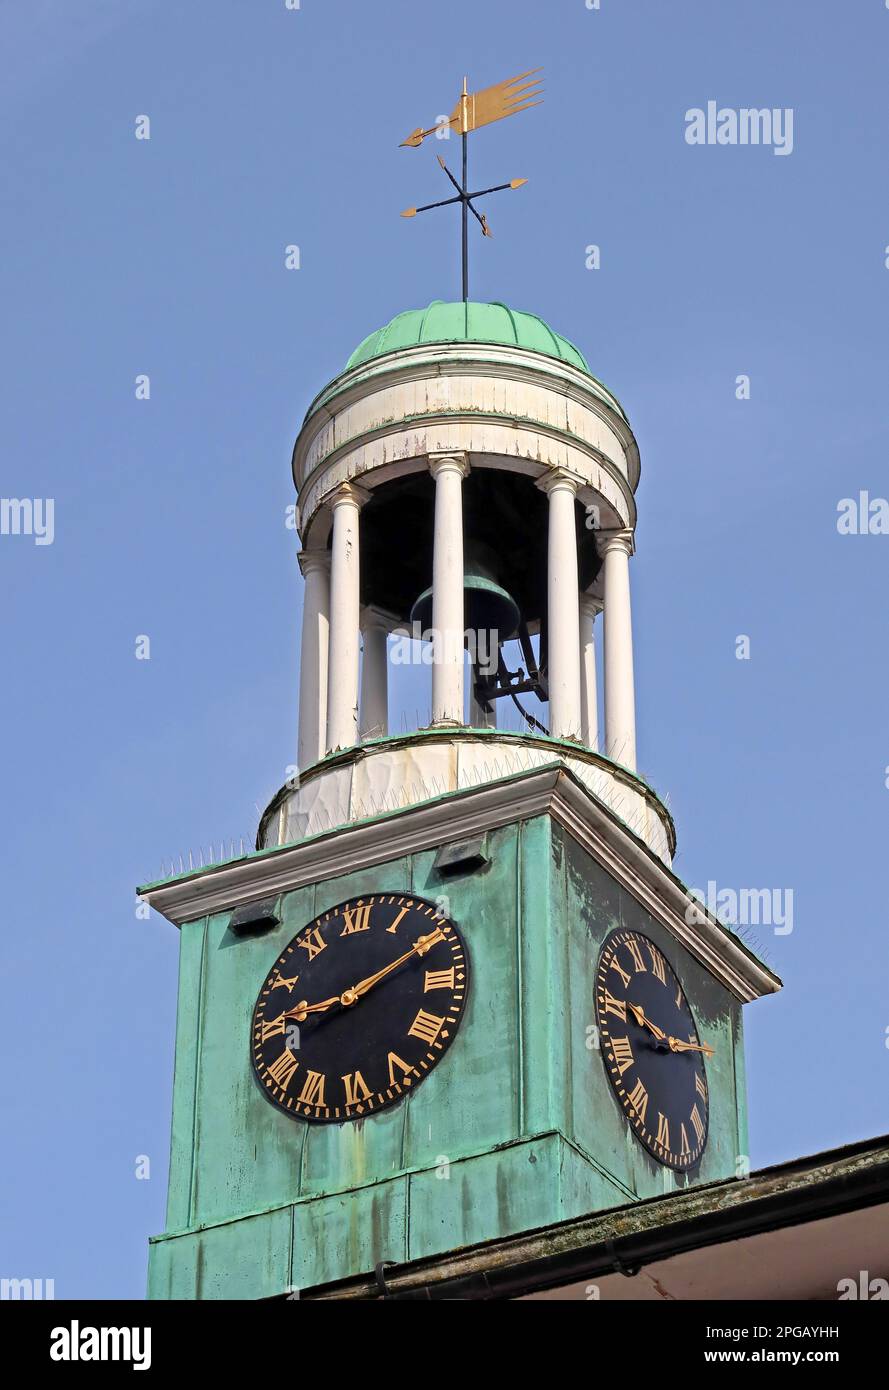 Das Pepperpot, die Uhr des Markthauses, das Rathaus, Gebäude und Architektur, High St, Godalming, Waverley, Surrey, England, Großbritannien, GU7 1AB Stockfoto